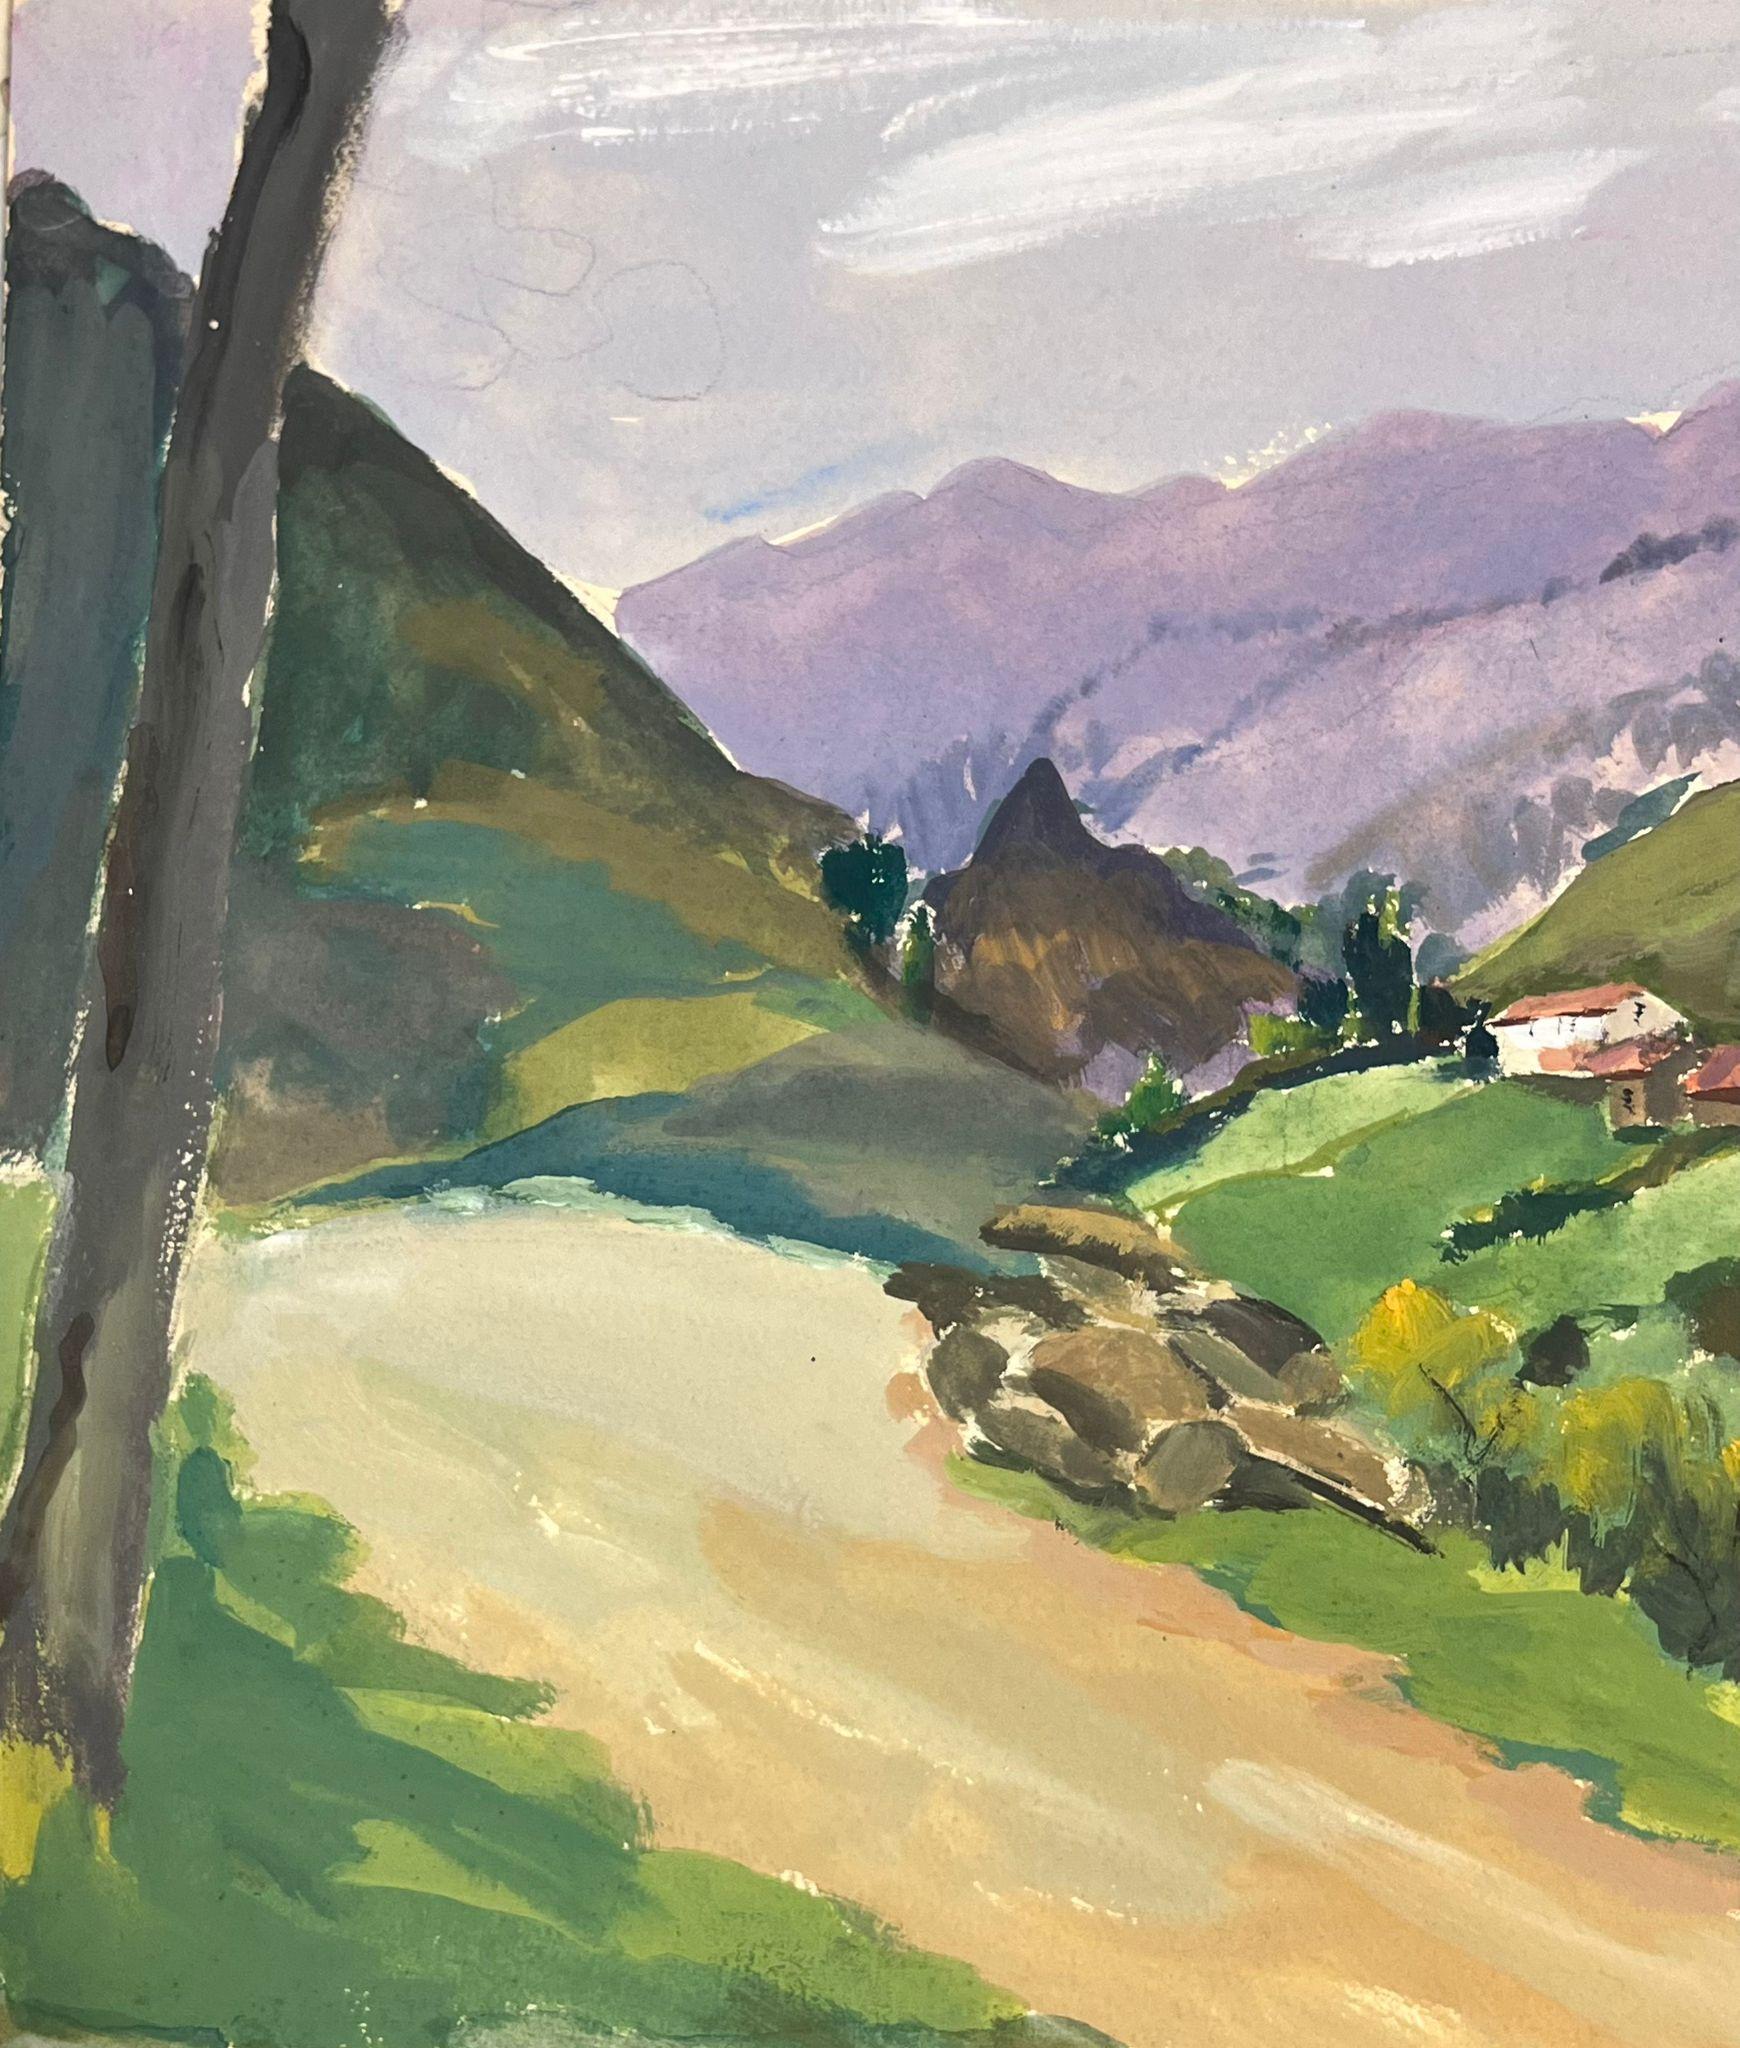 Französische Landhäuser aus den 1930er Jahren entlang der Landstraße, die zu den Purple Mountains führt – Painting von Louise Alix